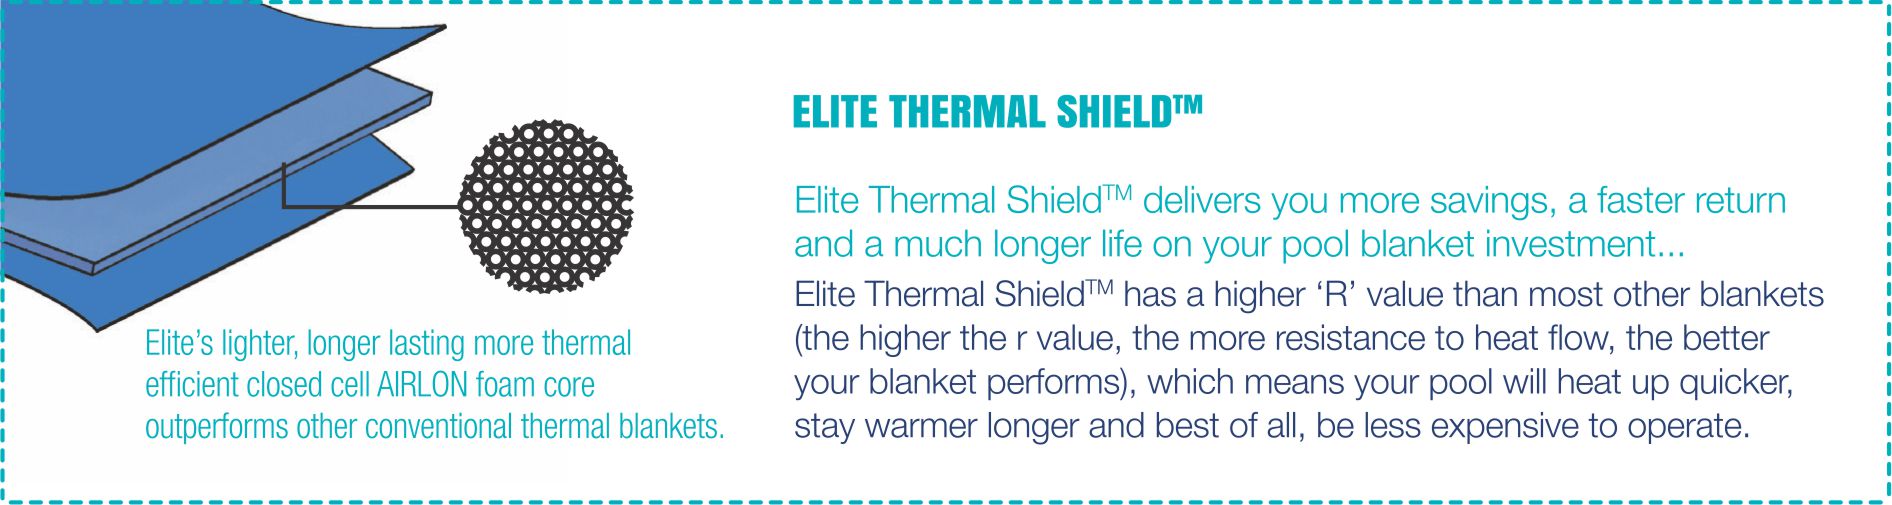 Elite Thermal Shield Pool Blanket